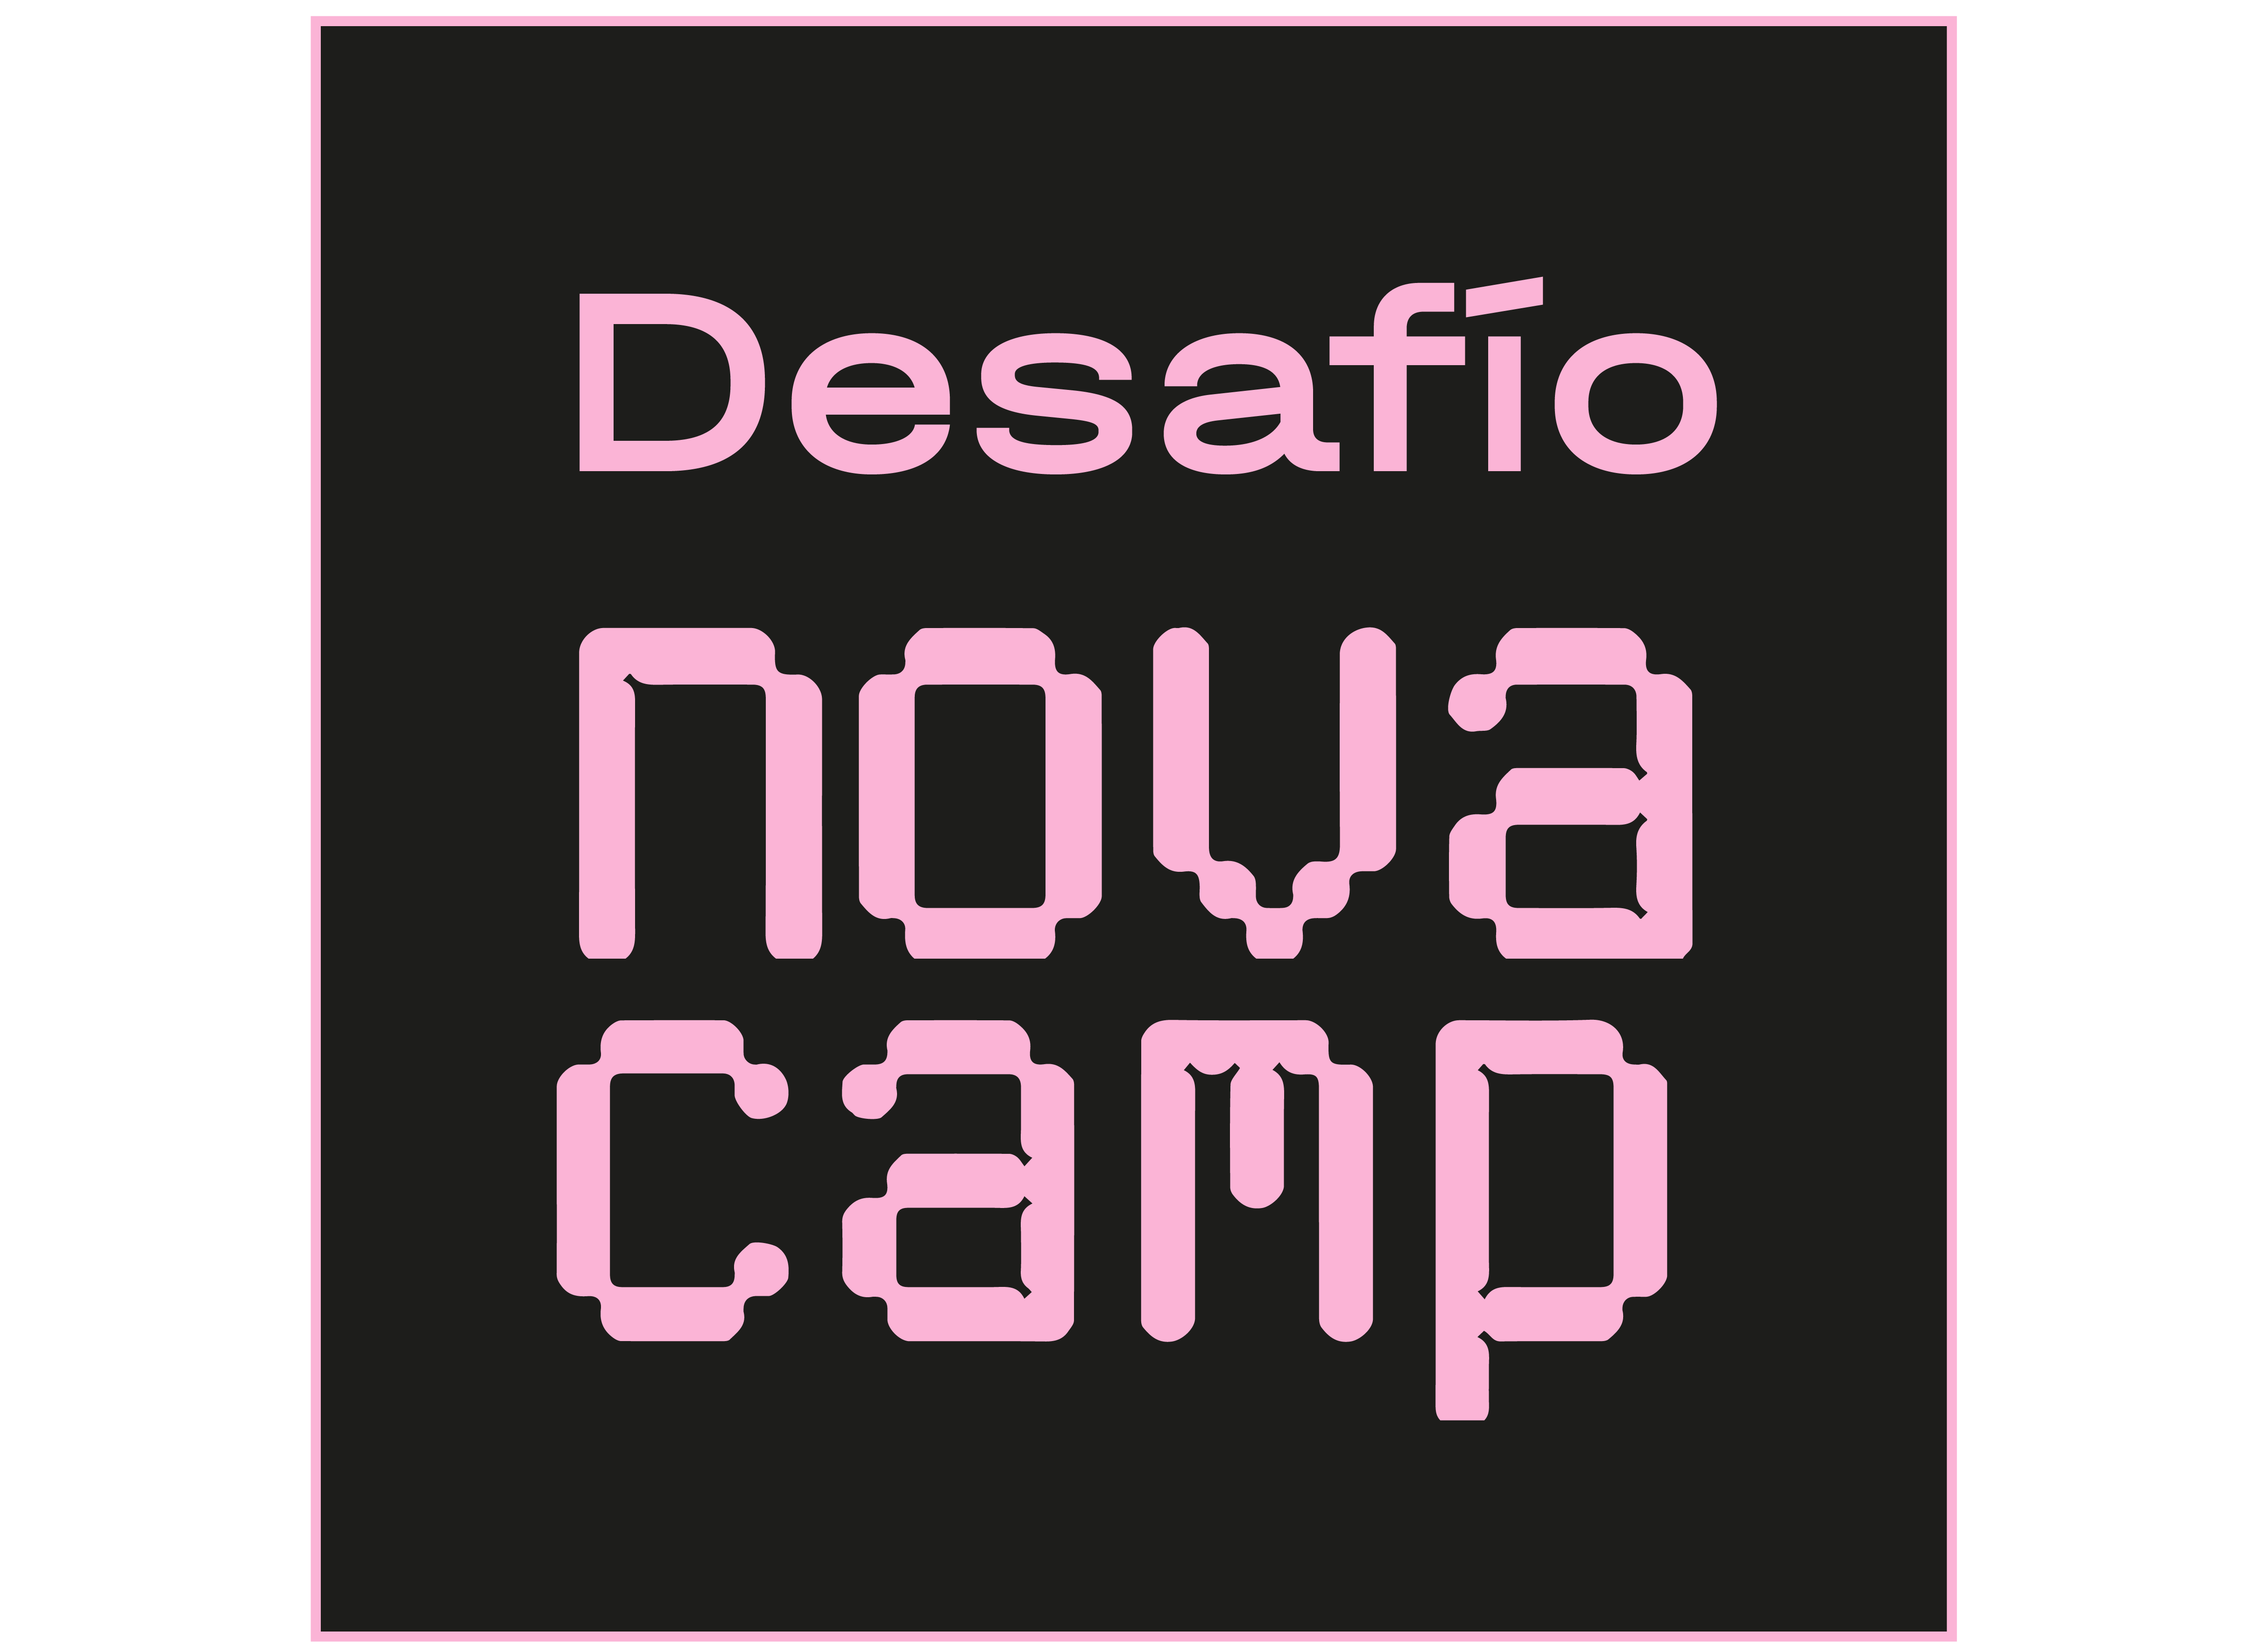 Imagen del Logotipo del evento, que dice Desafío Novacamp